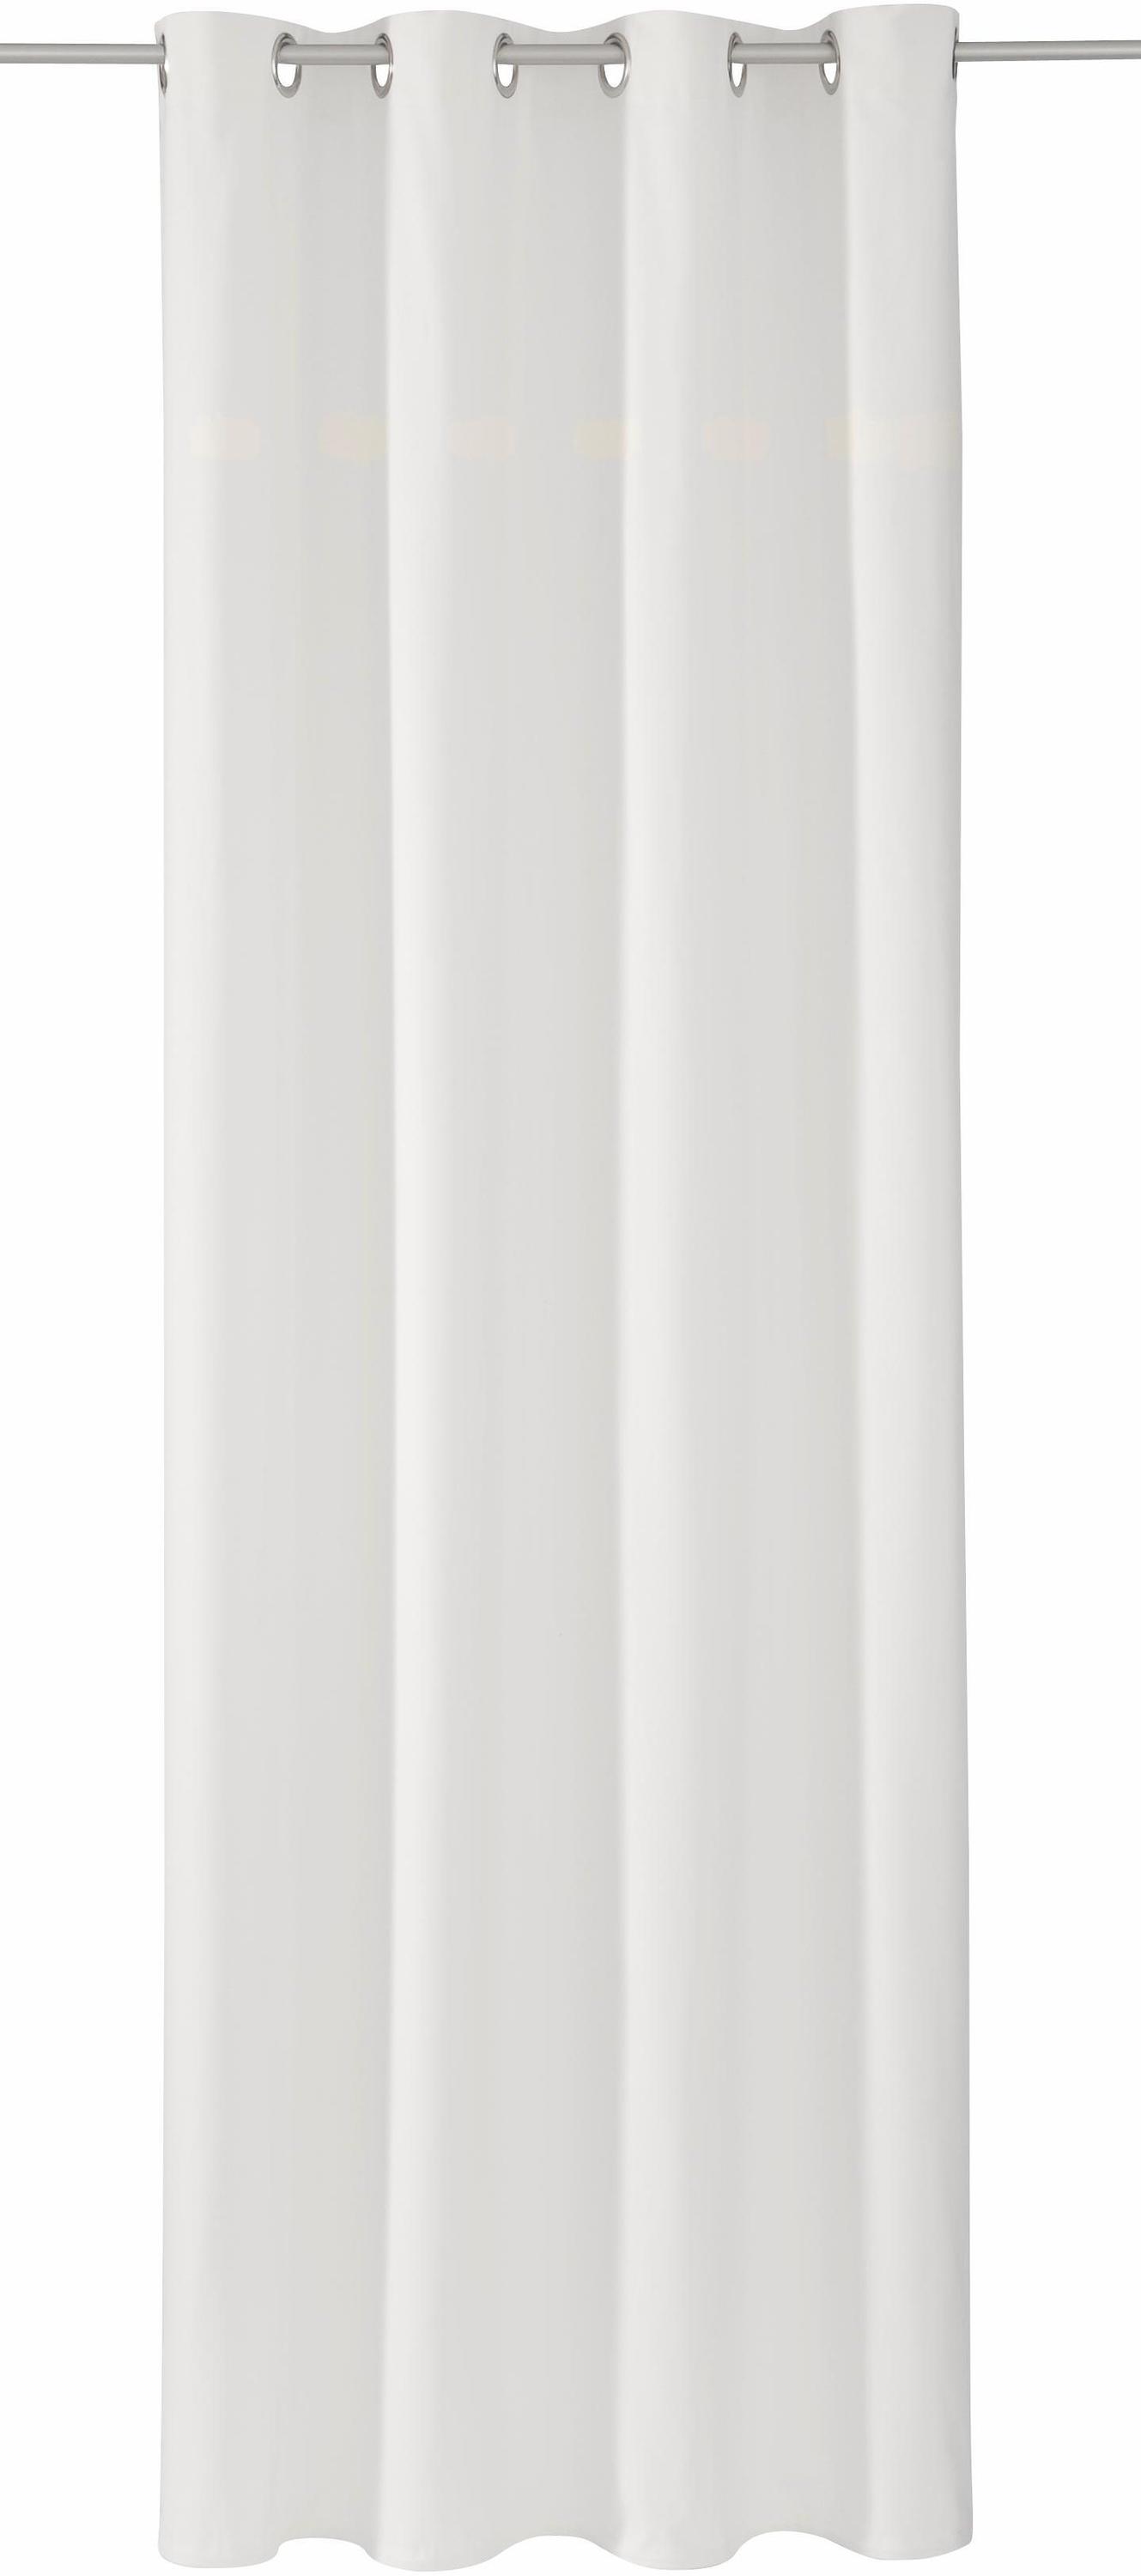 Tom Tailor Dove mit Ösen 245x140cm weiß Gardine & Vorhang